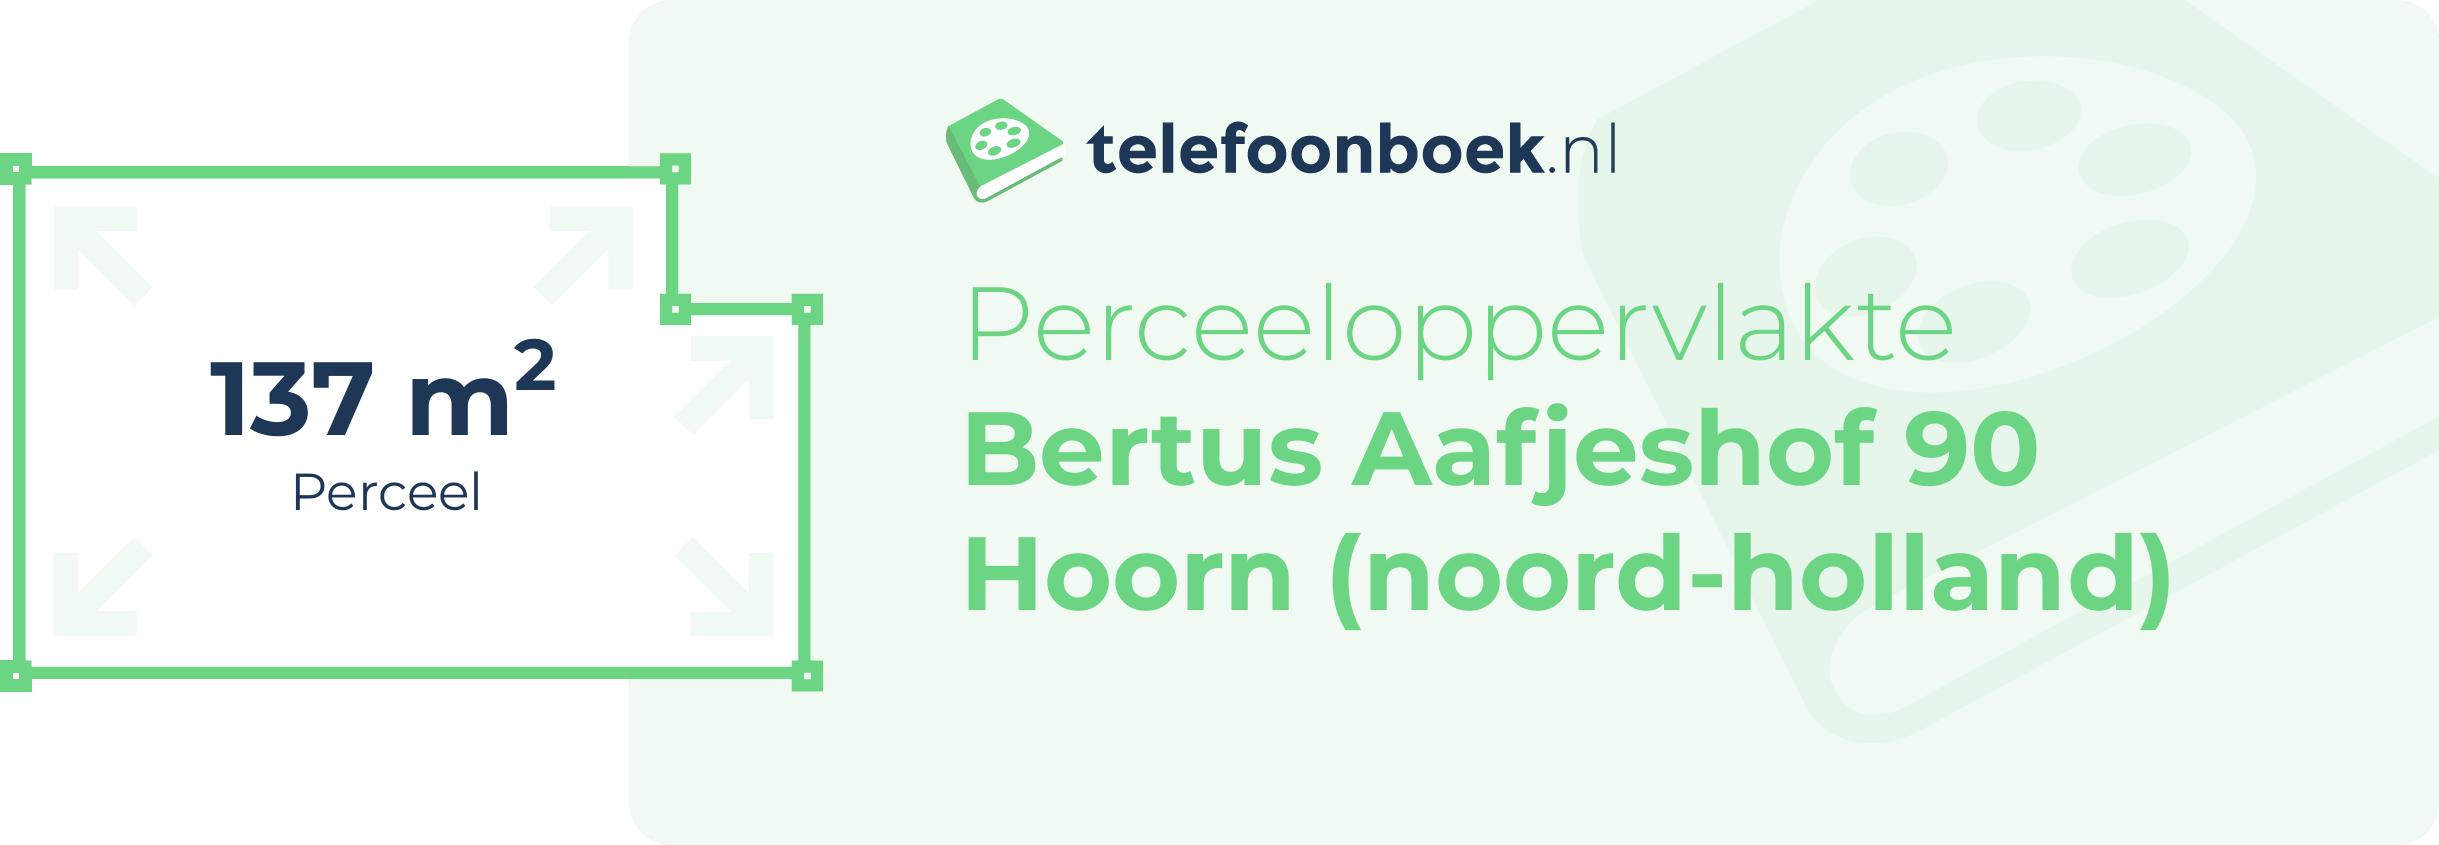 Perceeloppervlakte Bertus Aafjeshof 90 Hoorn (Noord-Holland)